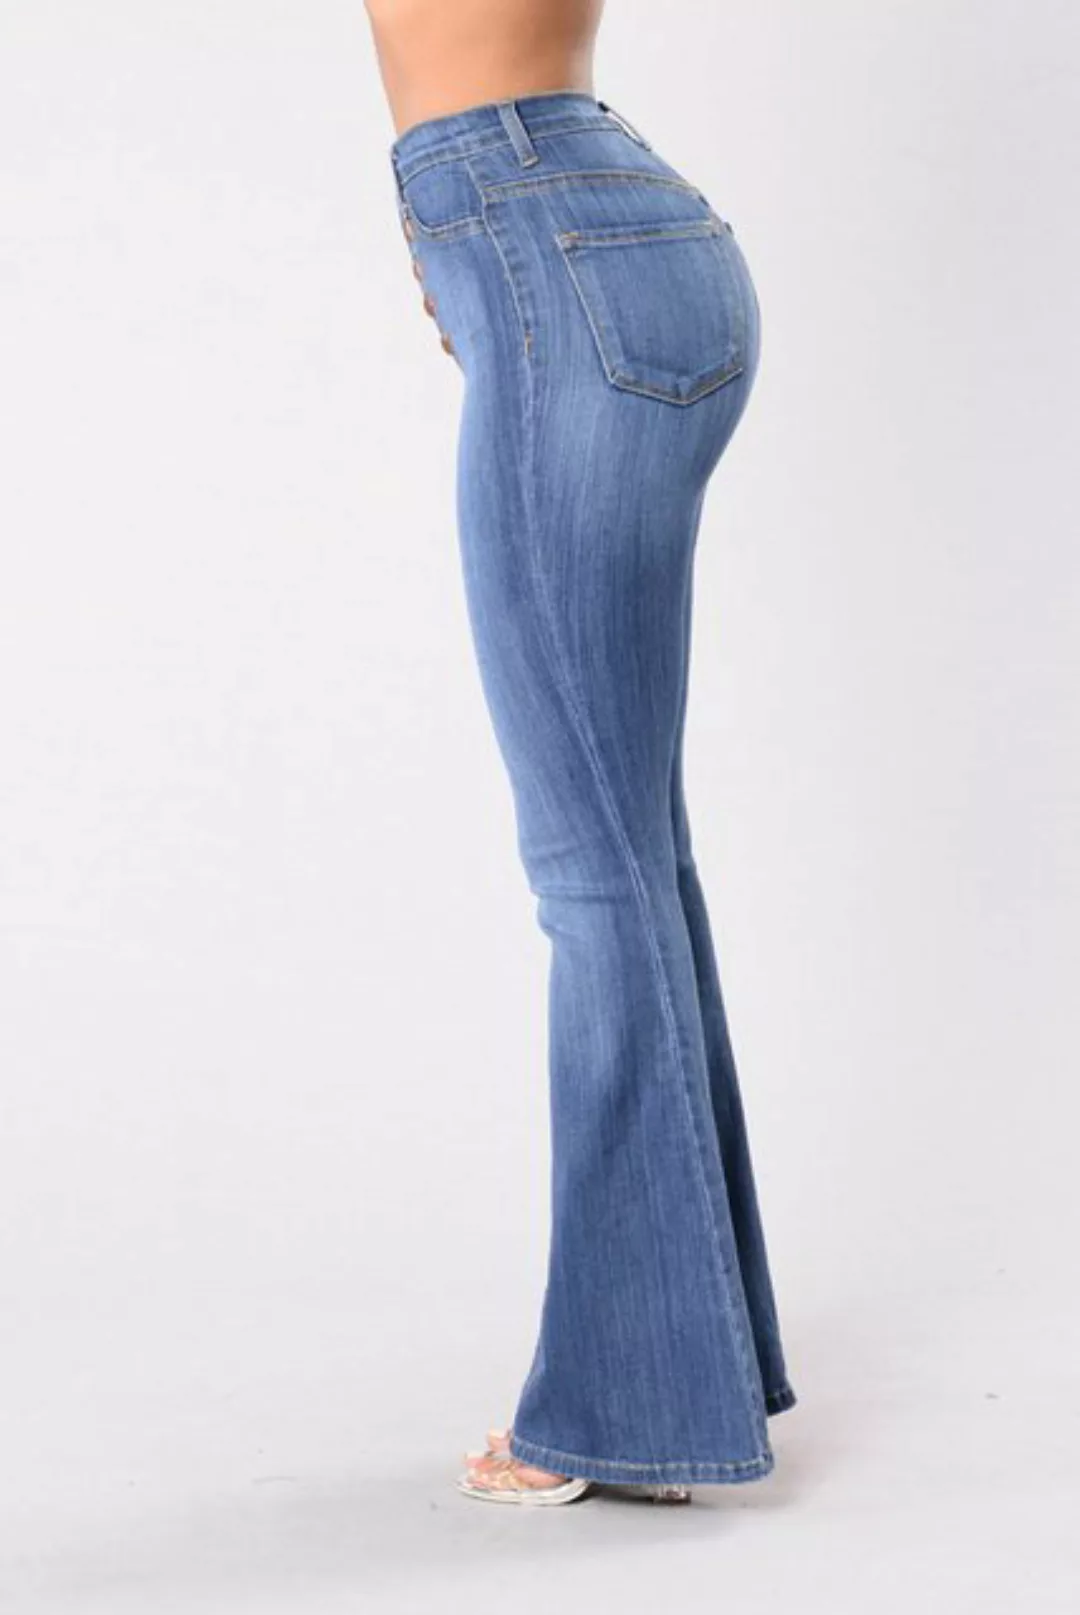 ZWY Bootcut-Jeans Damen-Jeans, schmale, ausgestellte Hose mit hoher Taille günstig online kaufen